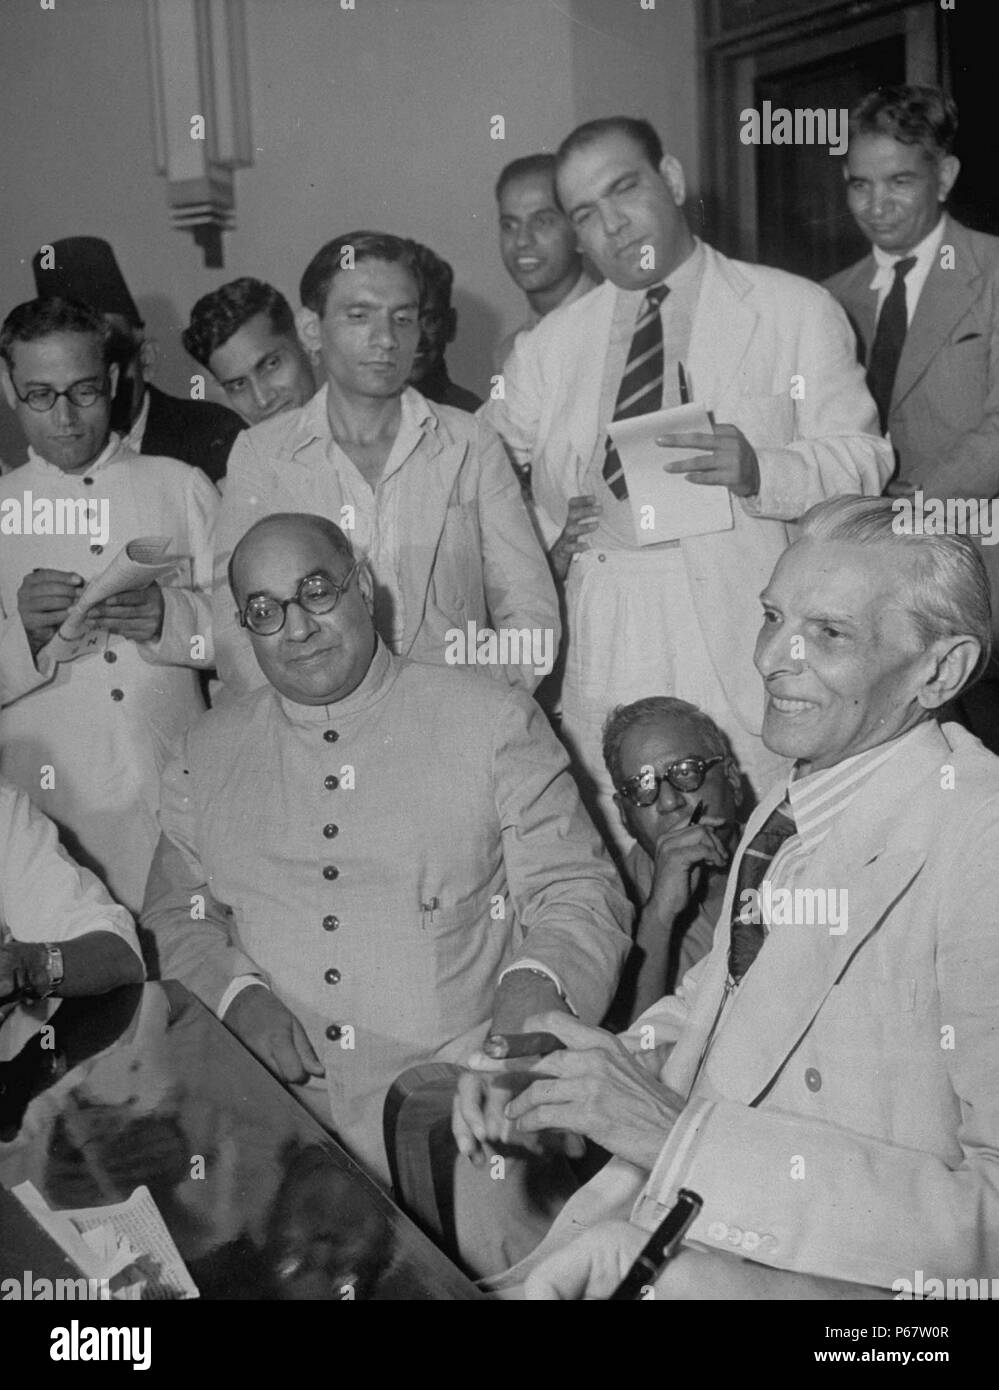 Muhammad Ali Jinnah und Liaquat Ali Khan werden als die ersten Generalgouverneur und erster Premierminister von Pakistan genannt. Beide sind als die Väter der modernen Pakistan und Khan ist der dienstälteste Ministerpräsident zu diesem Tag. Stockfoto